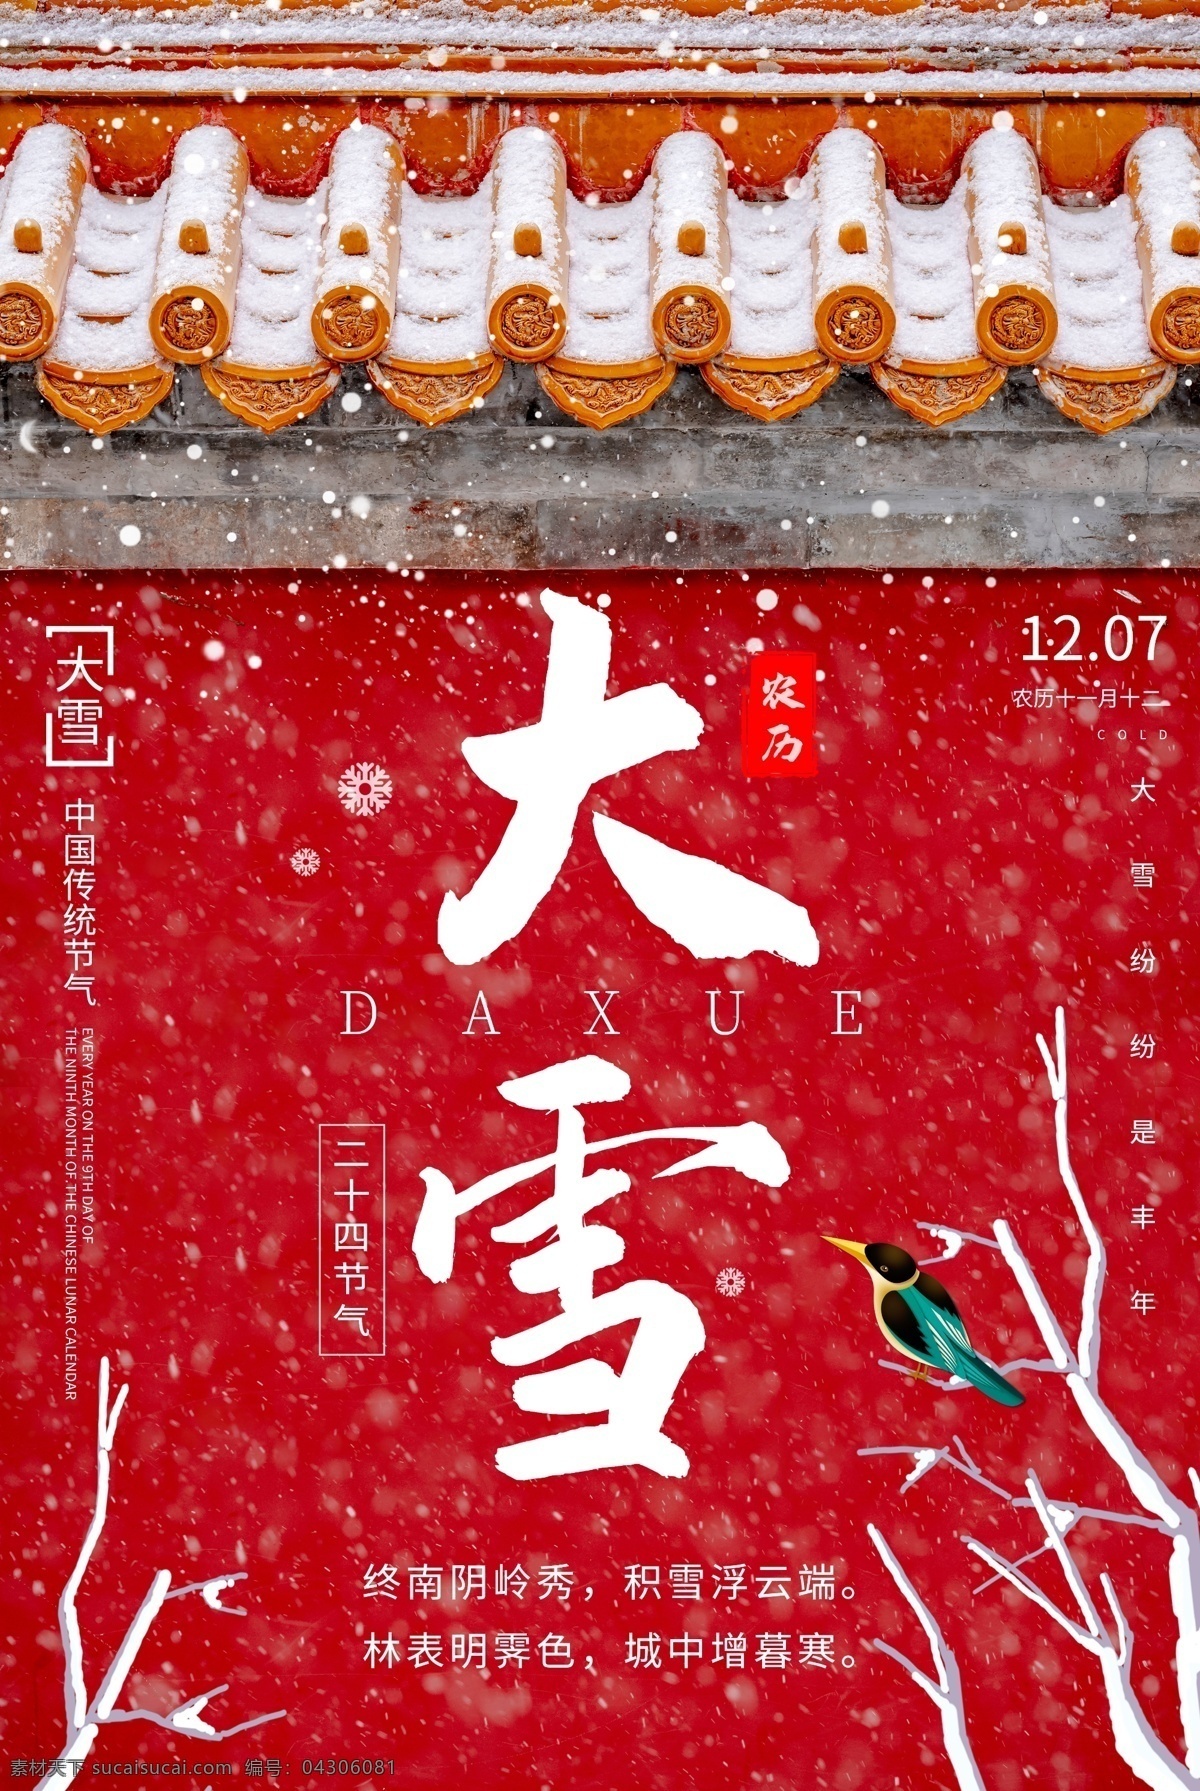 大雪 传统节日 活动 宣传海报 素材图片 传统 节日 宣传 海报